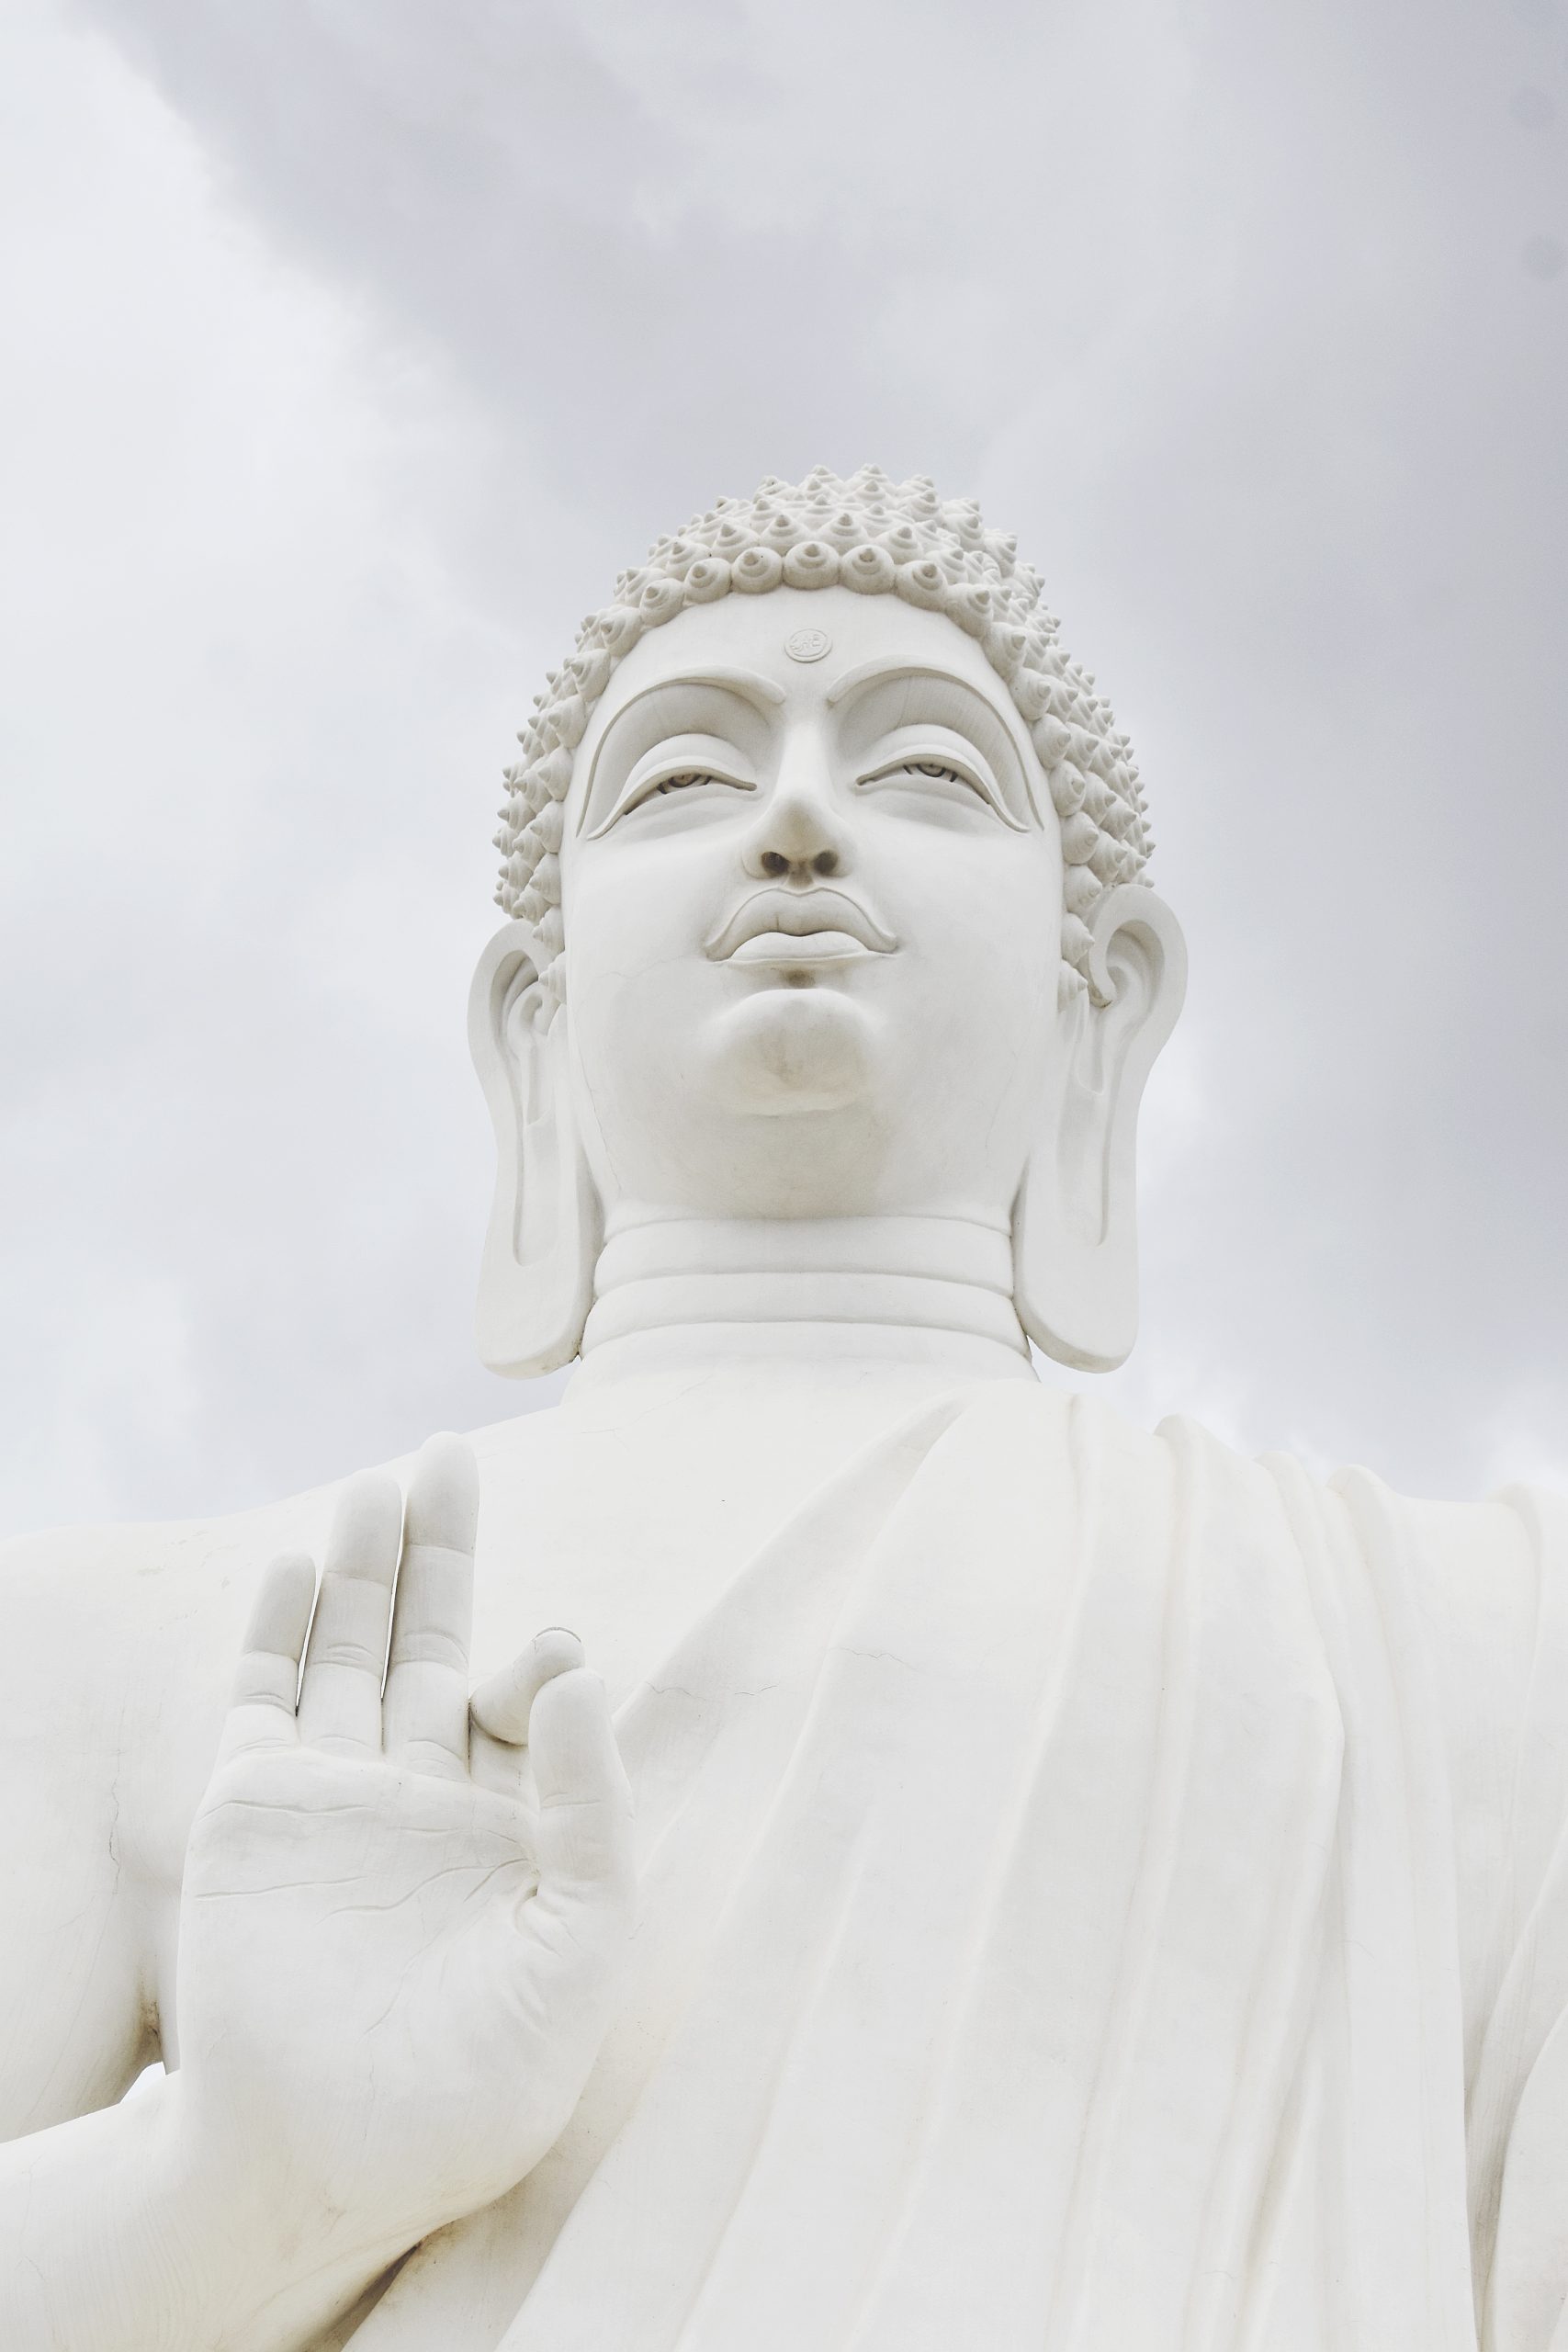 A statue of Buddha